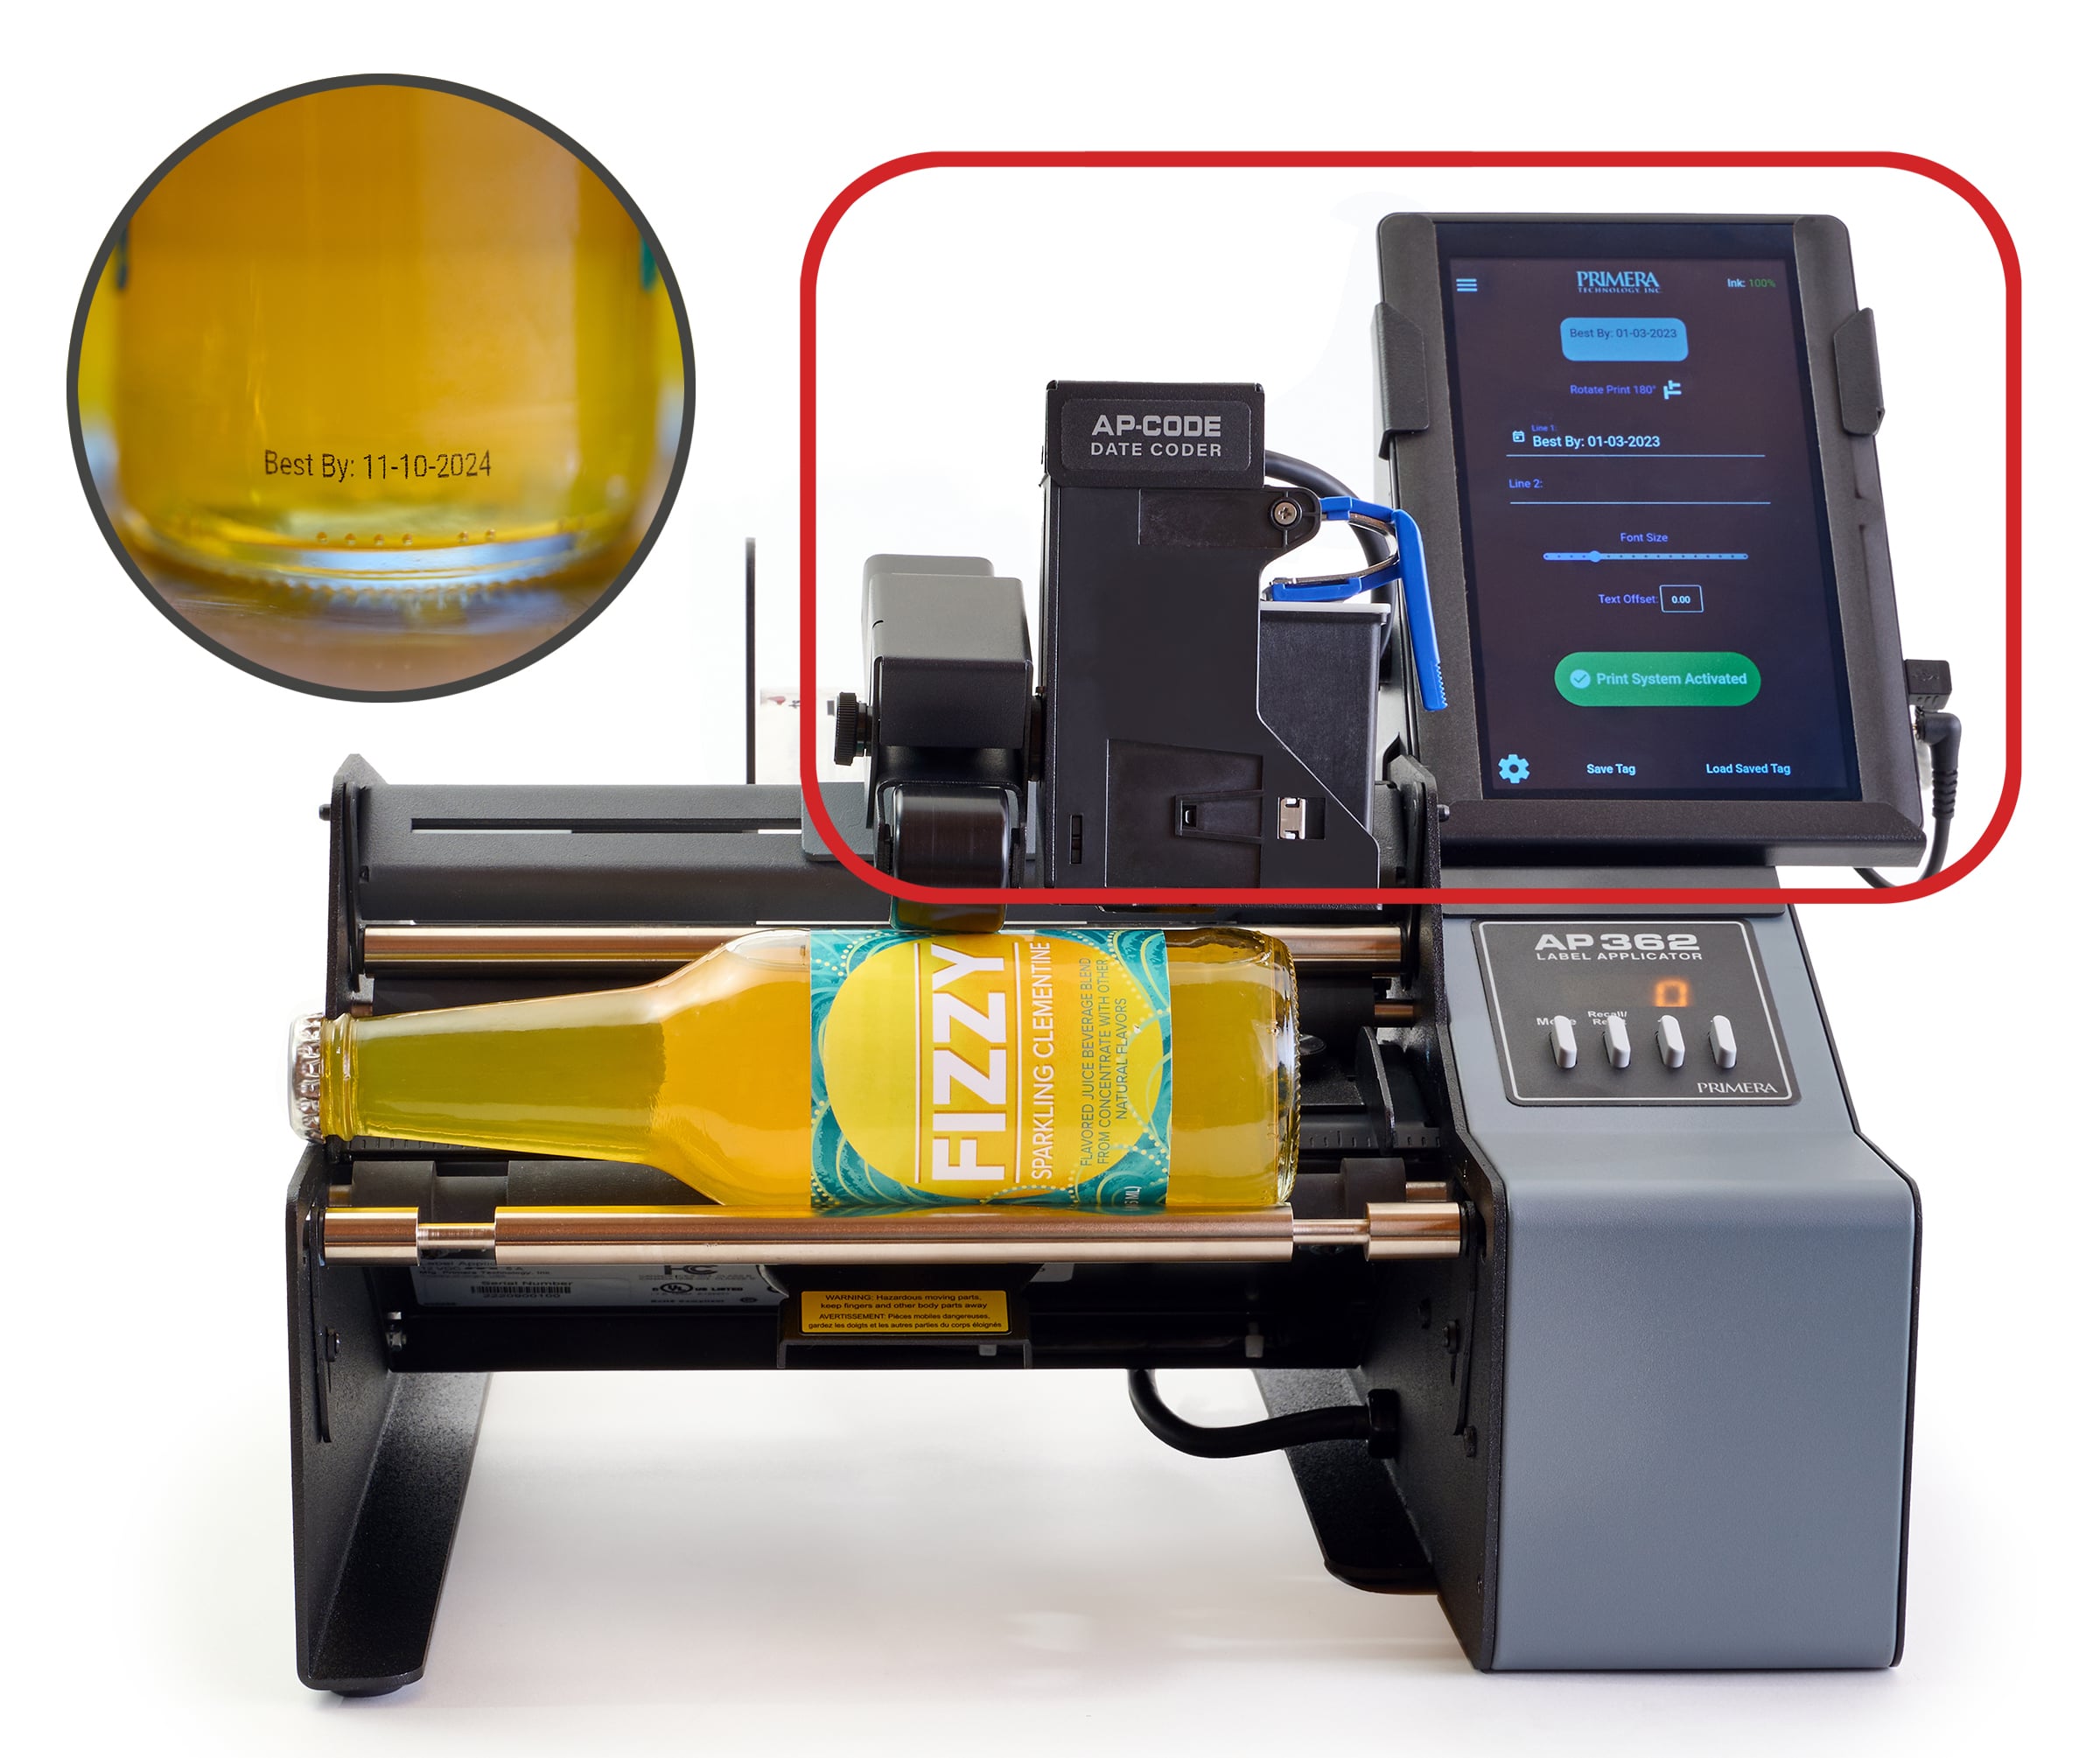 Buy AP360 Label Applicators, Bottle Labeling Machine & Label